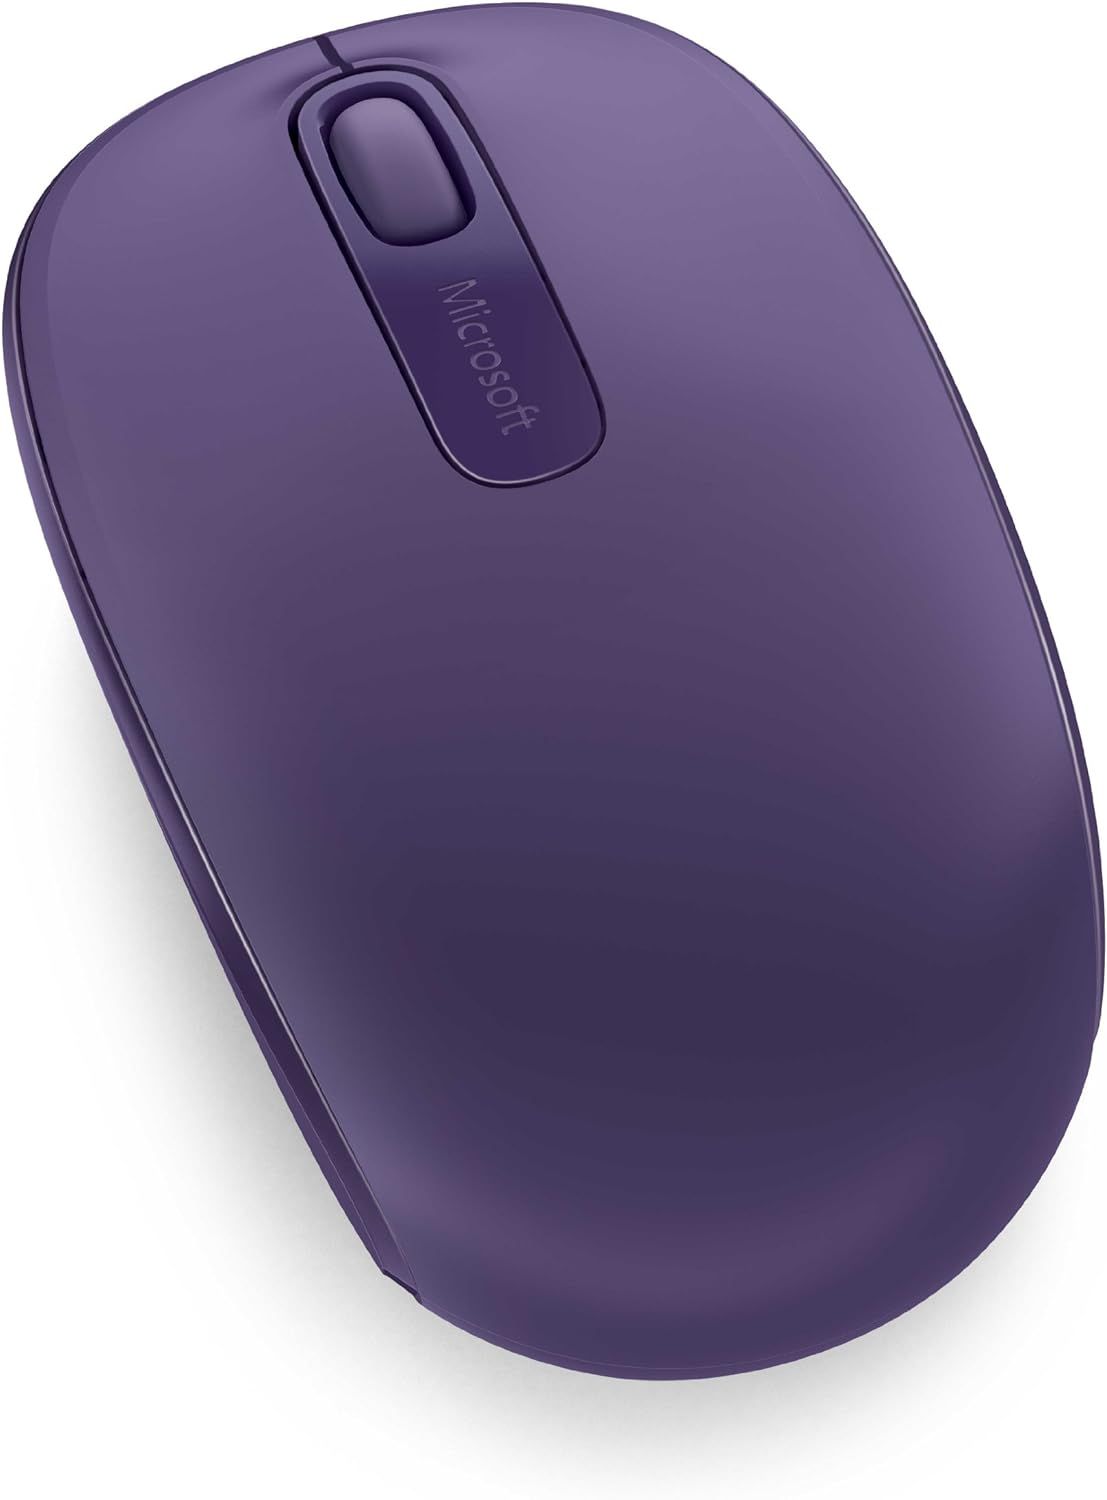 Мышь Microsoft Mobile Mouse 1850, беспроводная, фиолетовый— фото №2